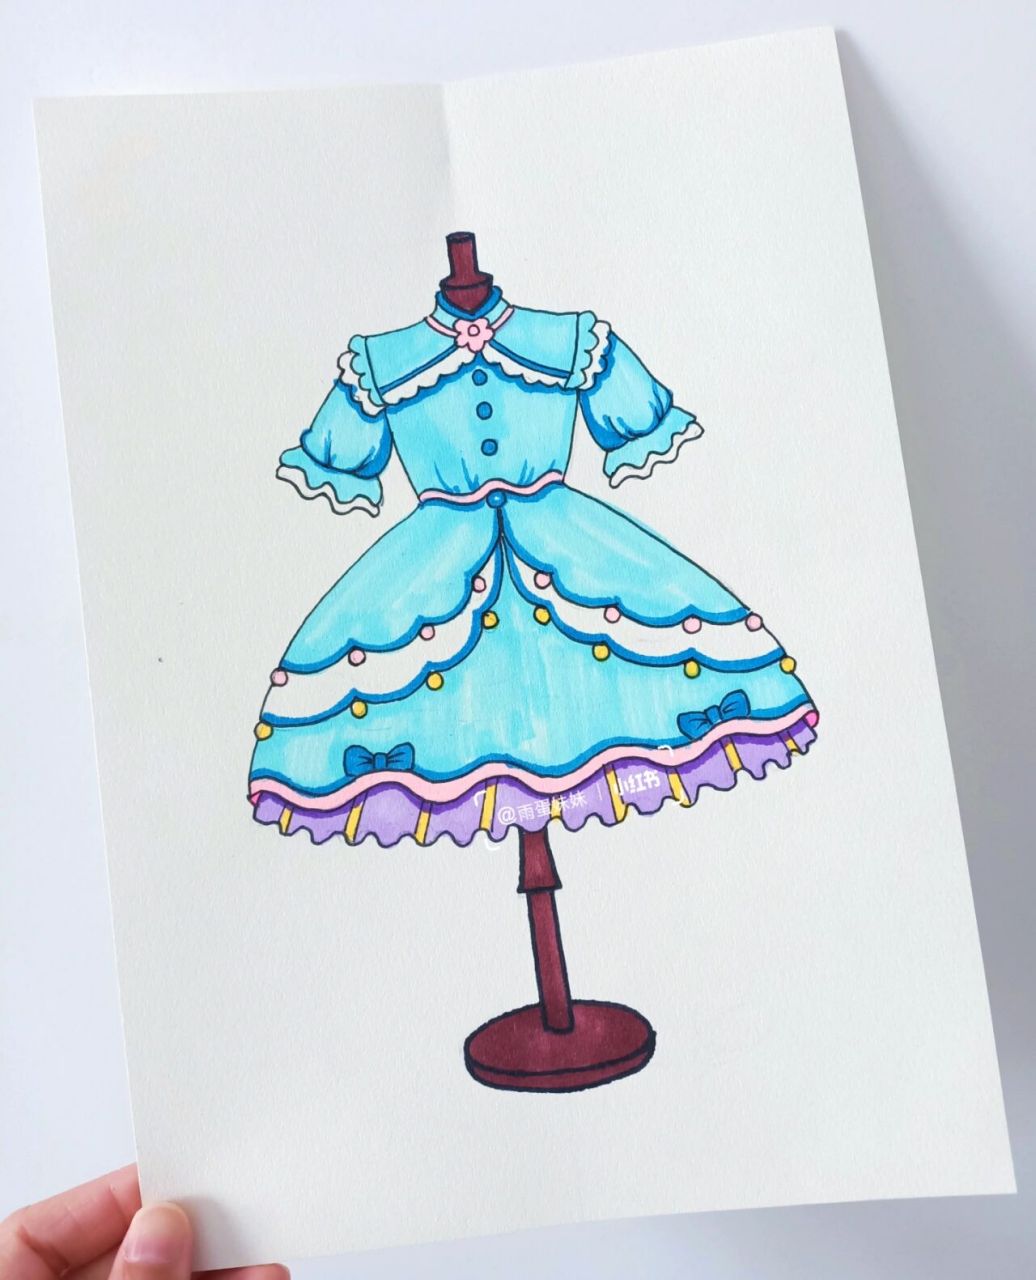 少儿童创意设计画一个漂亮的美少女公主裙